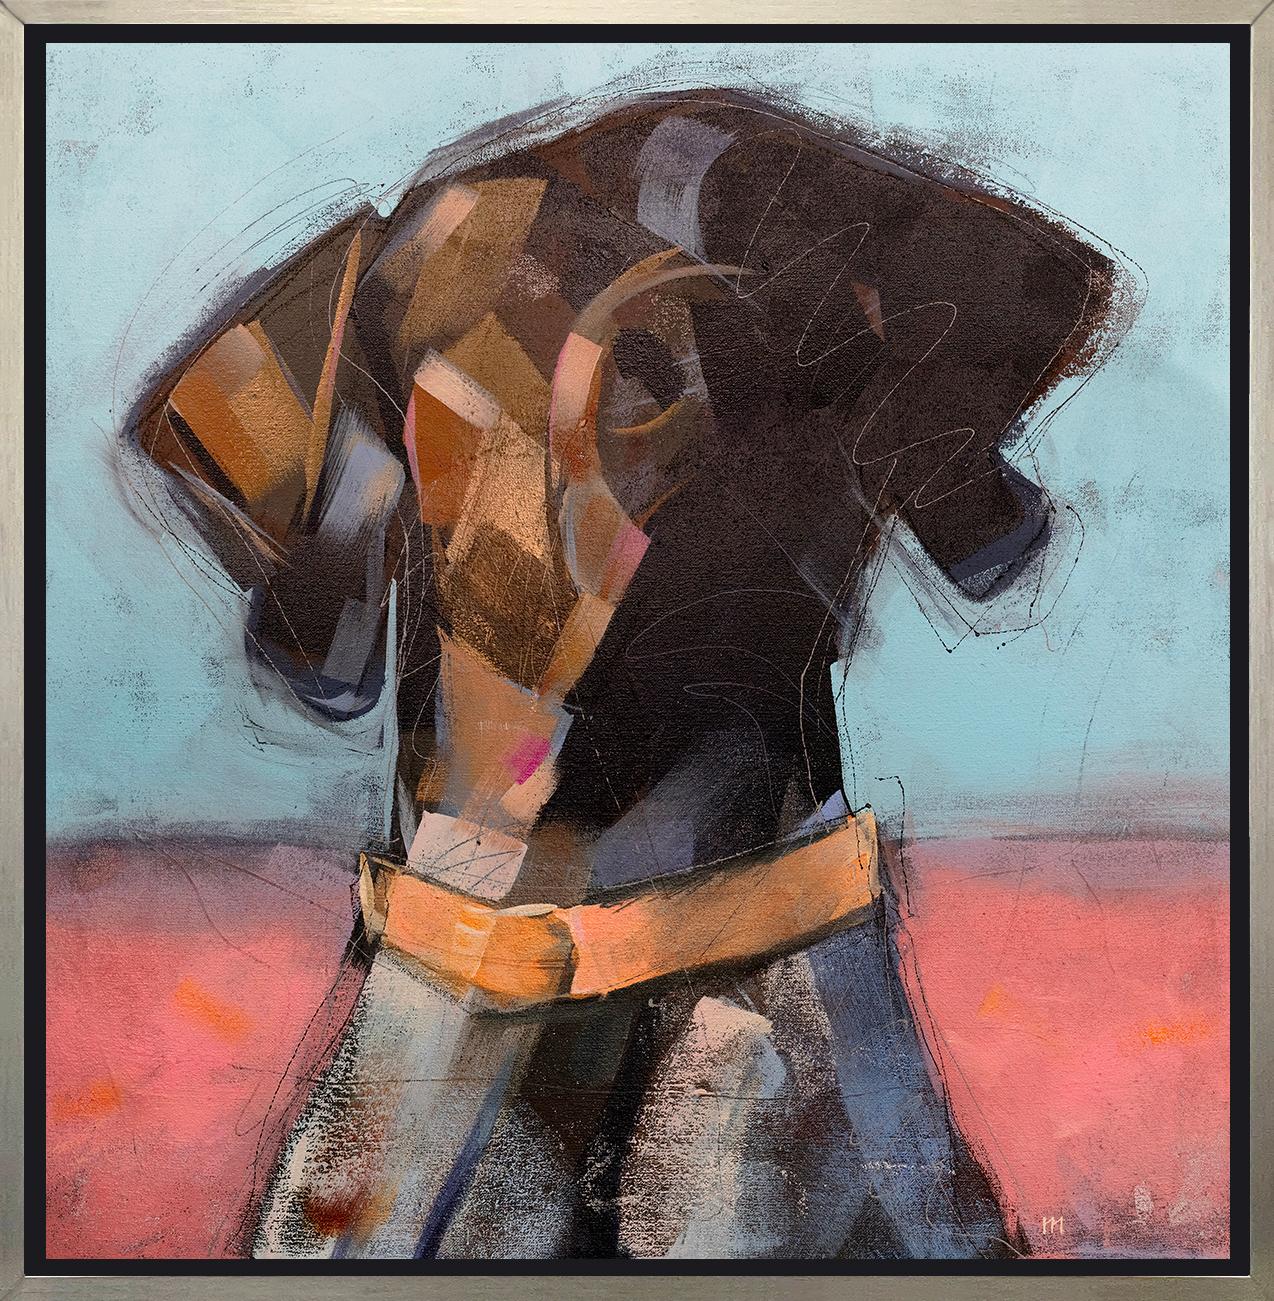 Cette impression abstraite d'un chien par l'artiste Russell Miyaki présente une palette vibrante, avec un chien marron à partir des épaules, portant un collier orange vif devant un fond lumineux, mi-rouge, mi-bleu. 

Cette impression giclée en